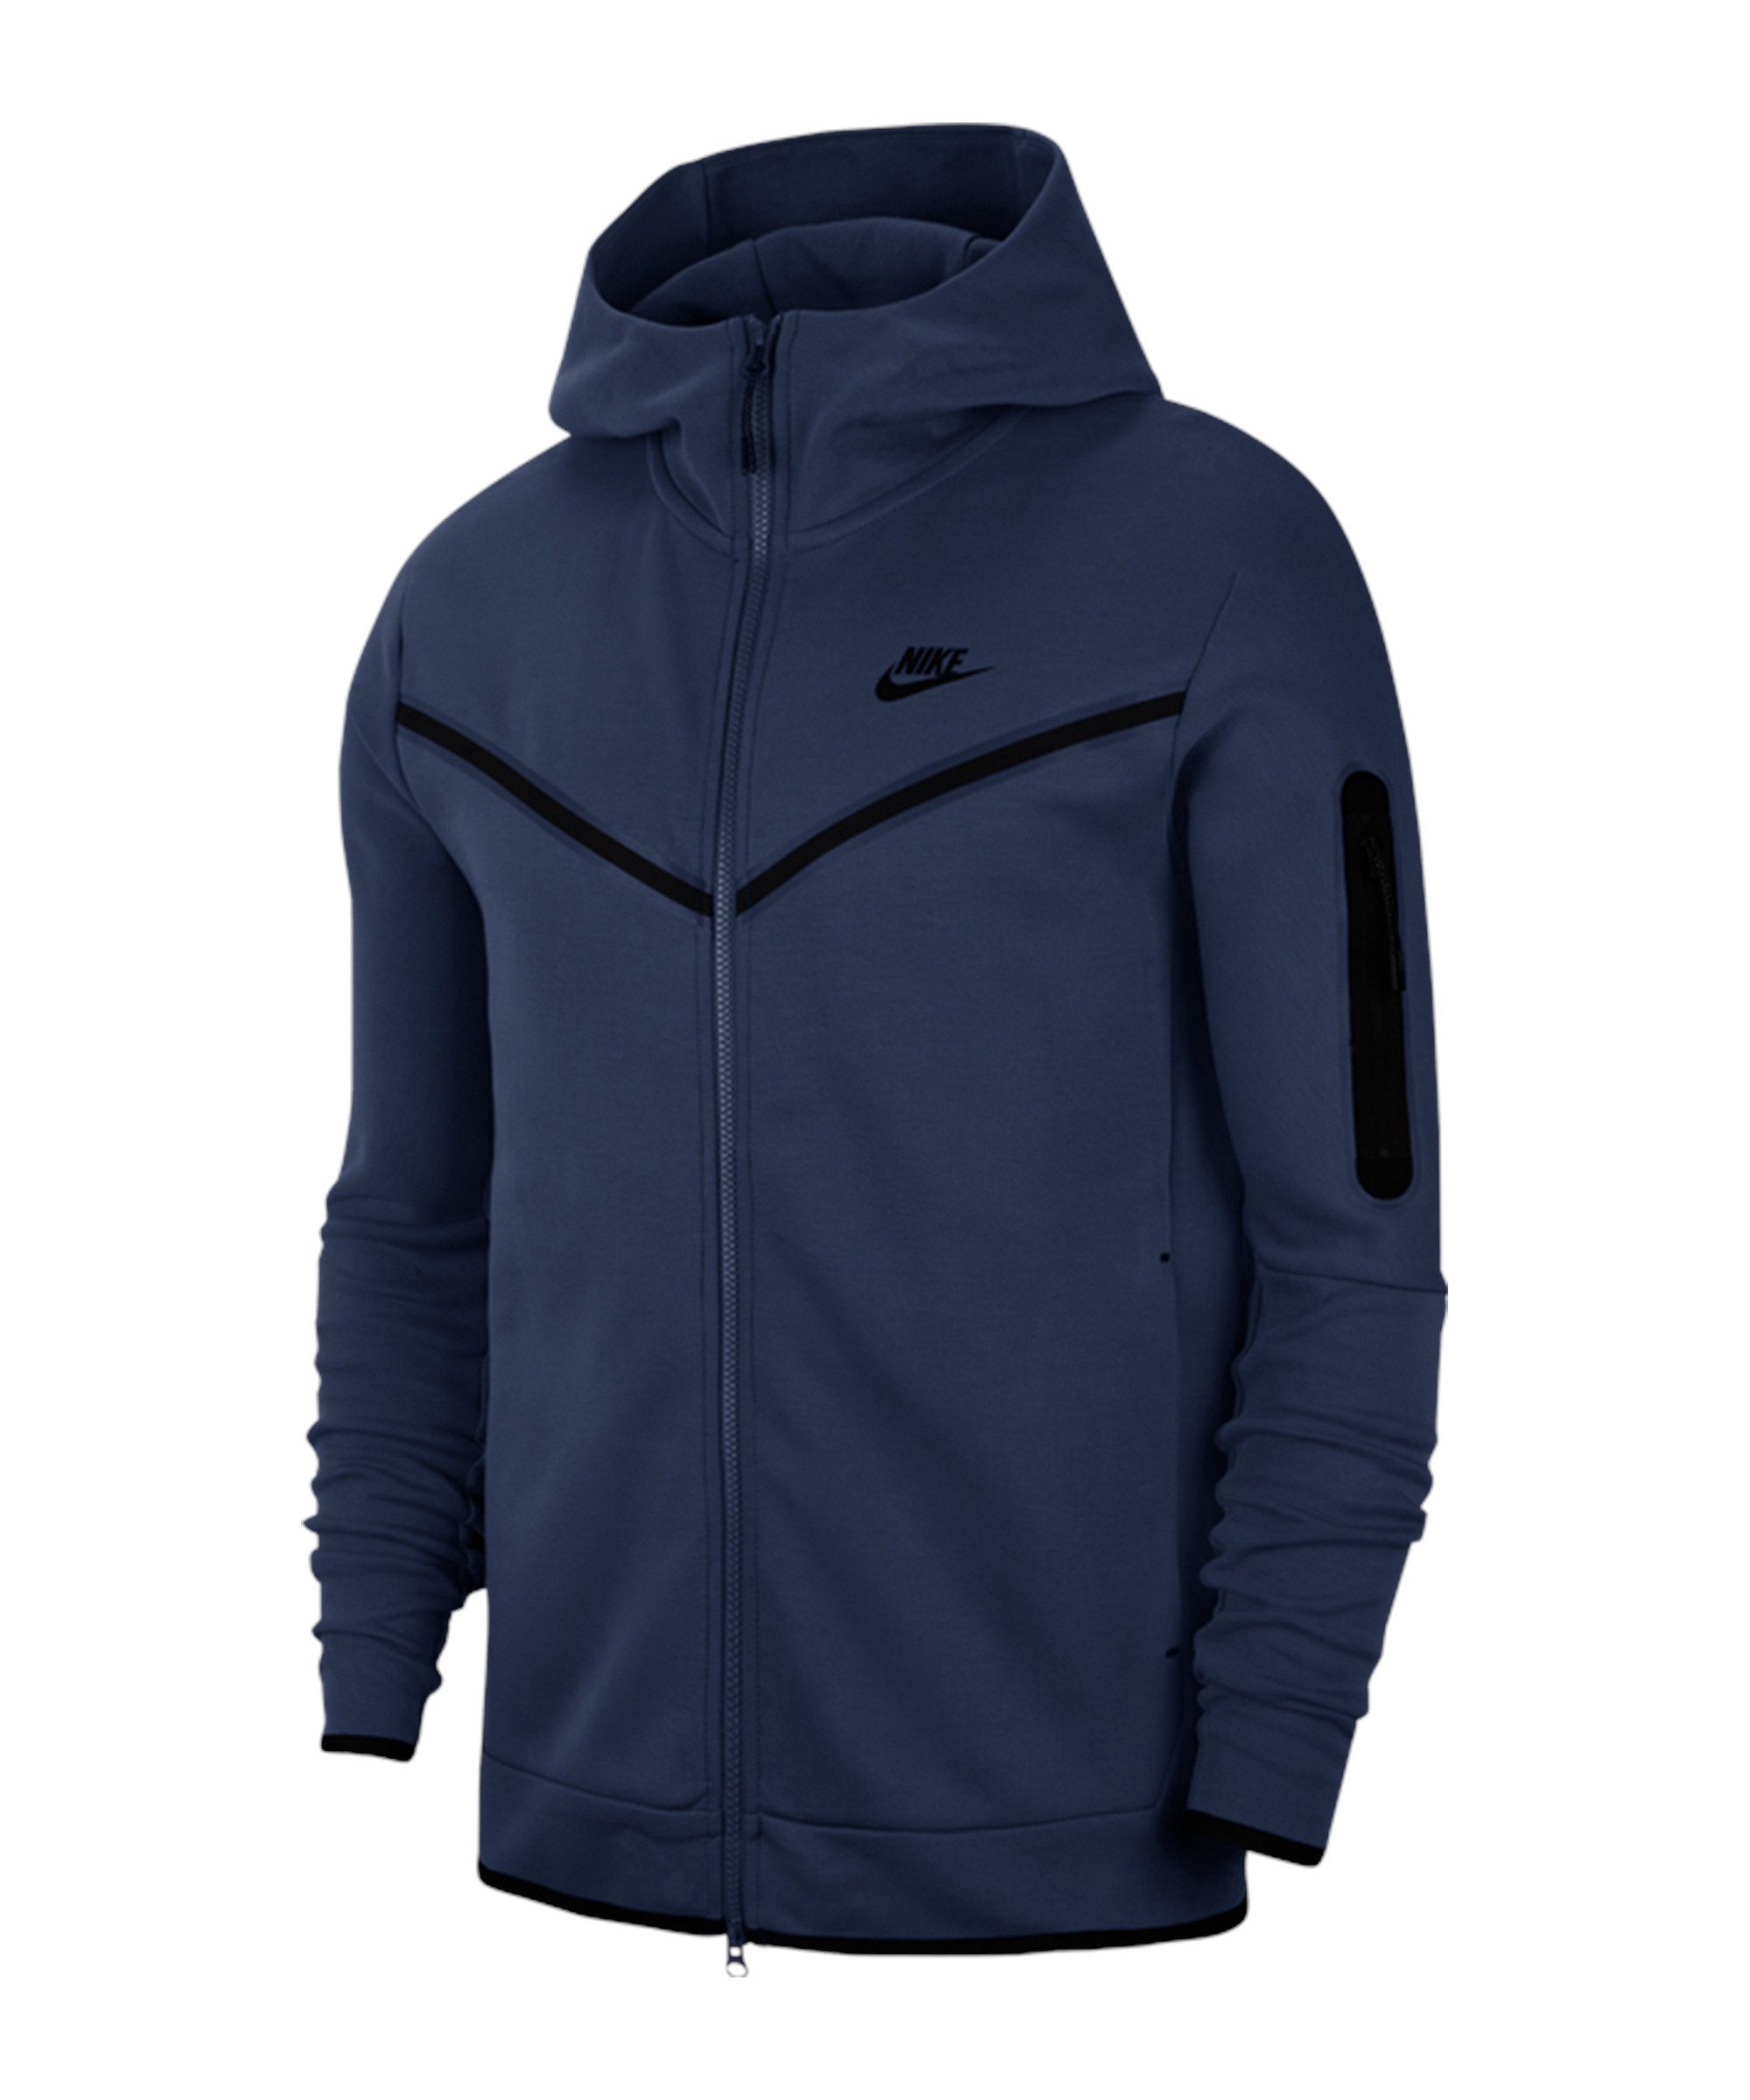 Nike Sportswear Sweatjacke Tech Fleece Windrunner blauschwarzblauschwarz